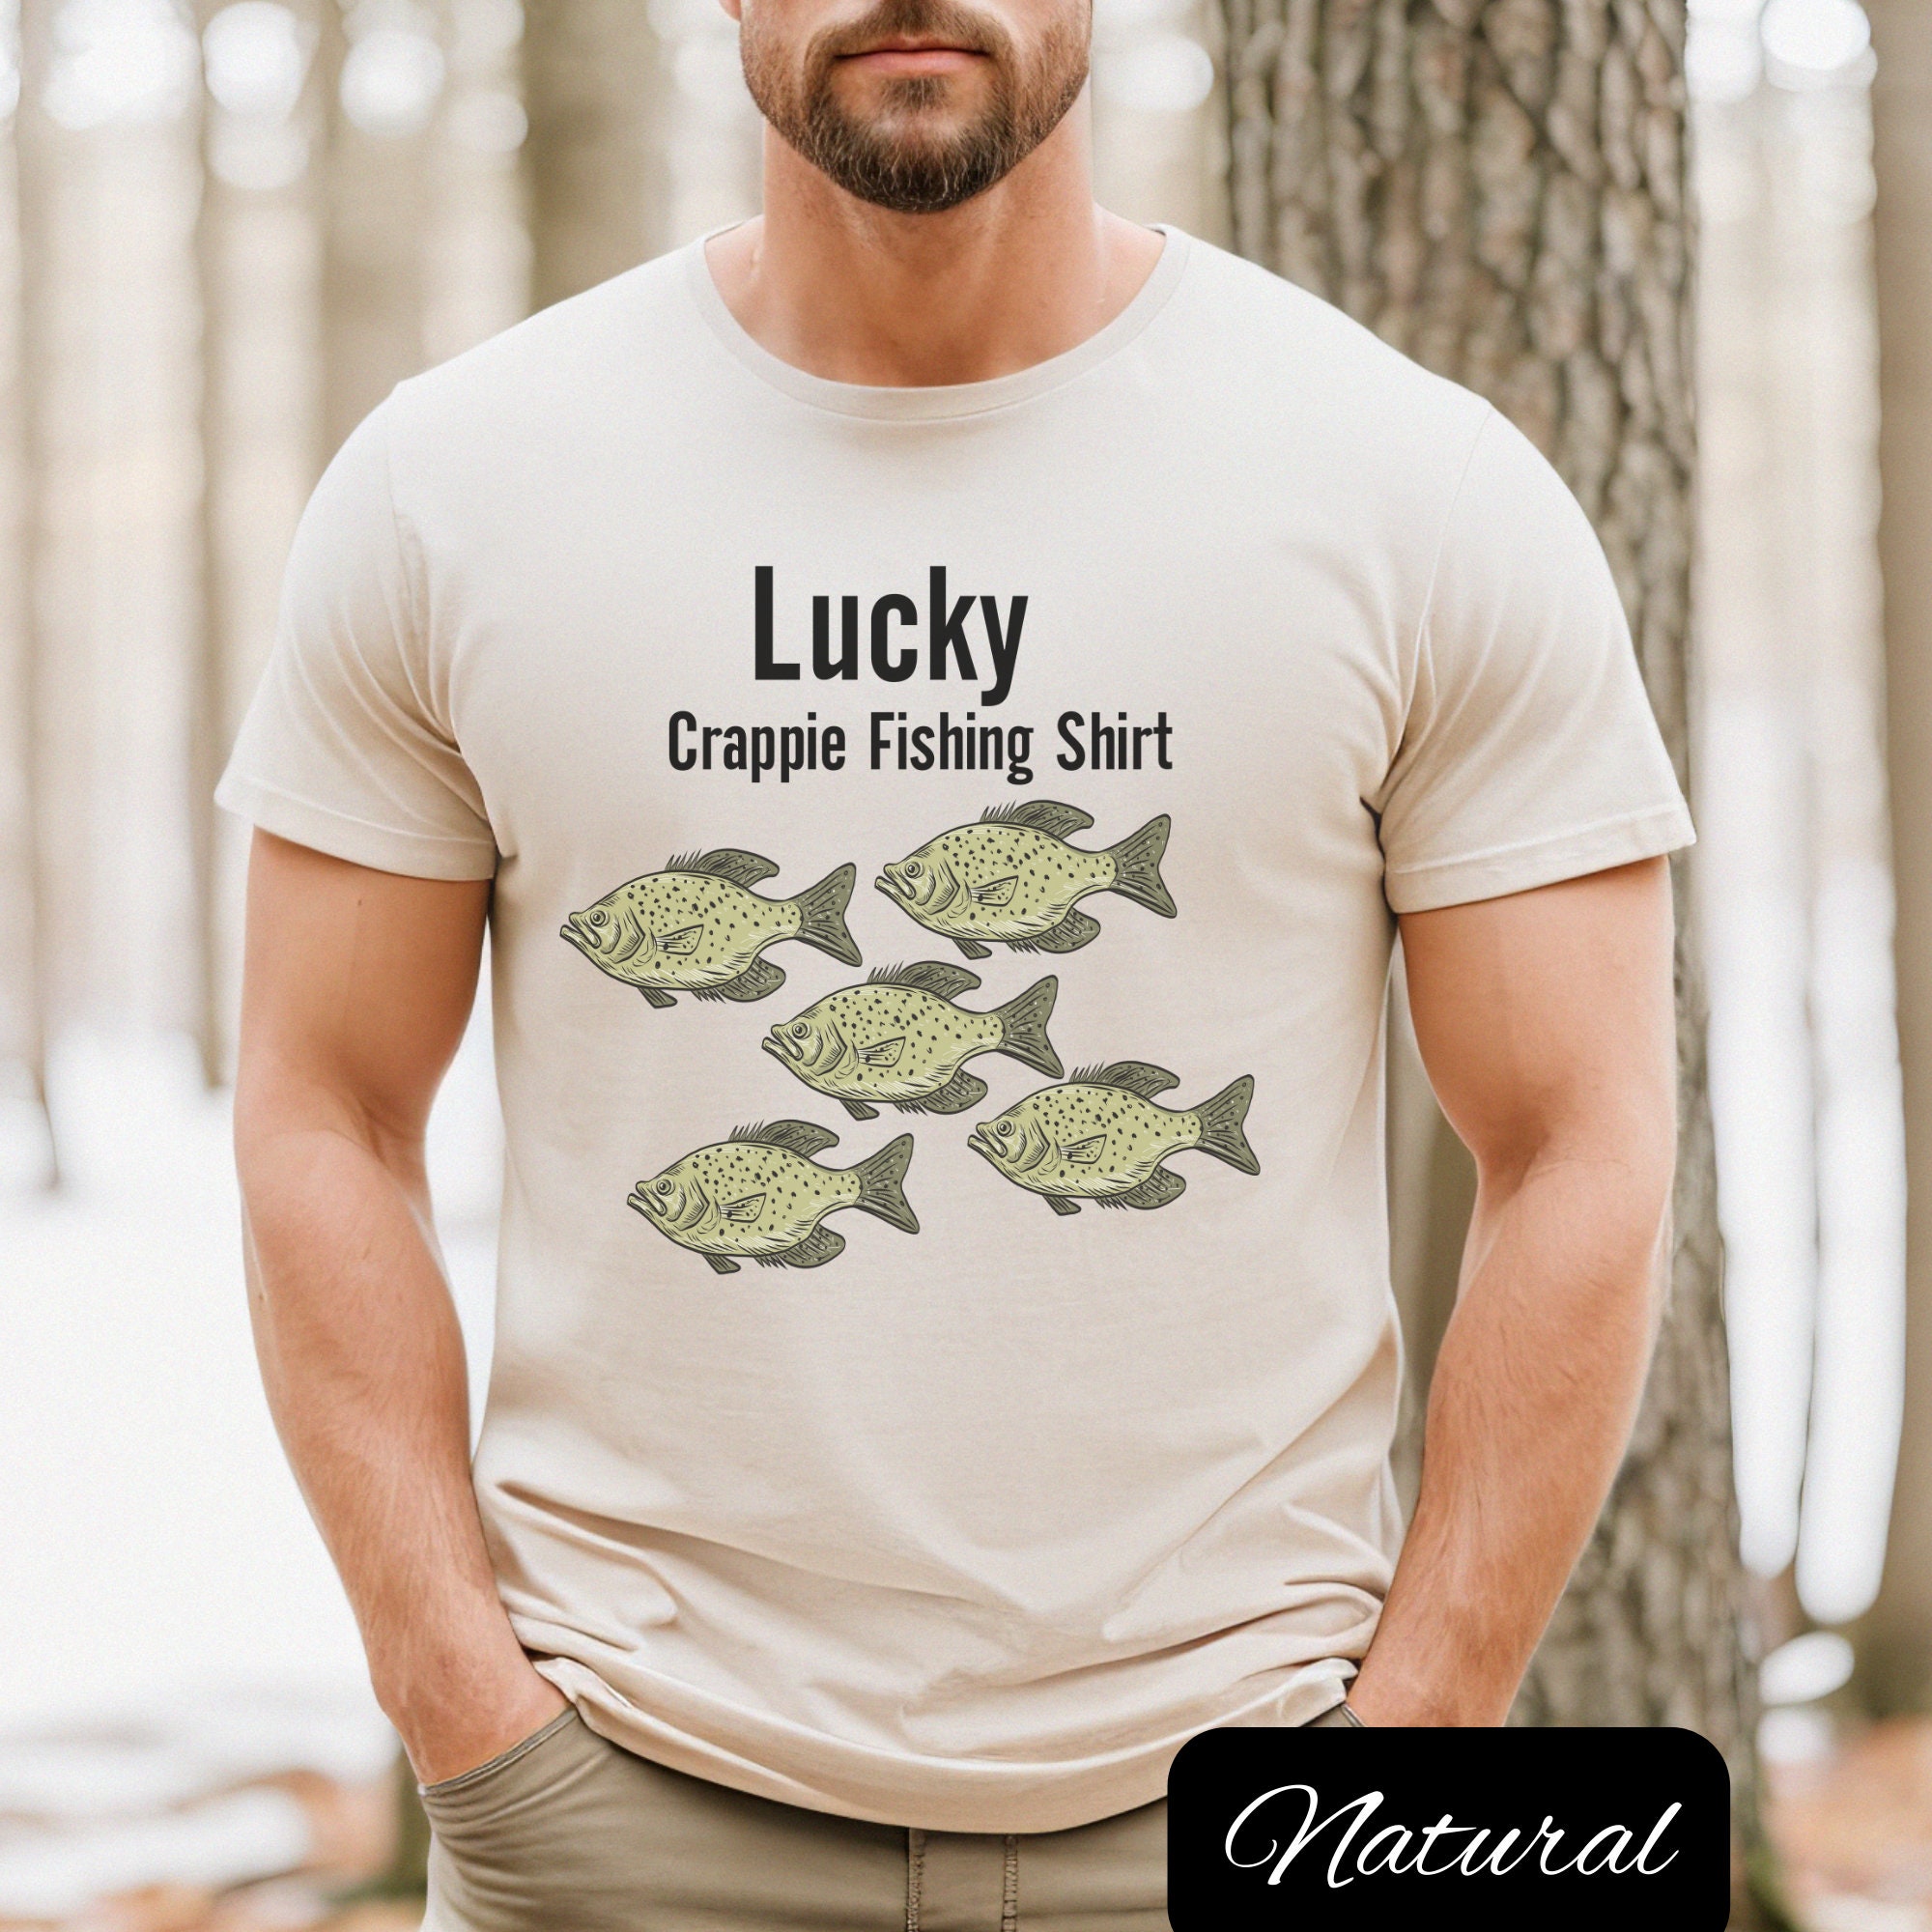 Lucky Fishing T Shirts, Funny Fishing Shirts, Crappie Shirts, Fisherman Shirt